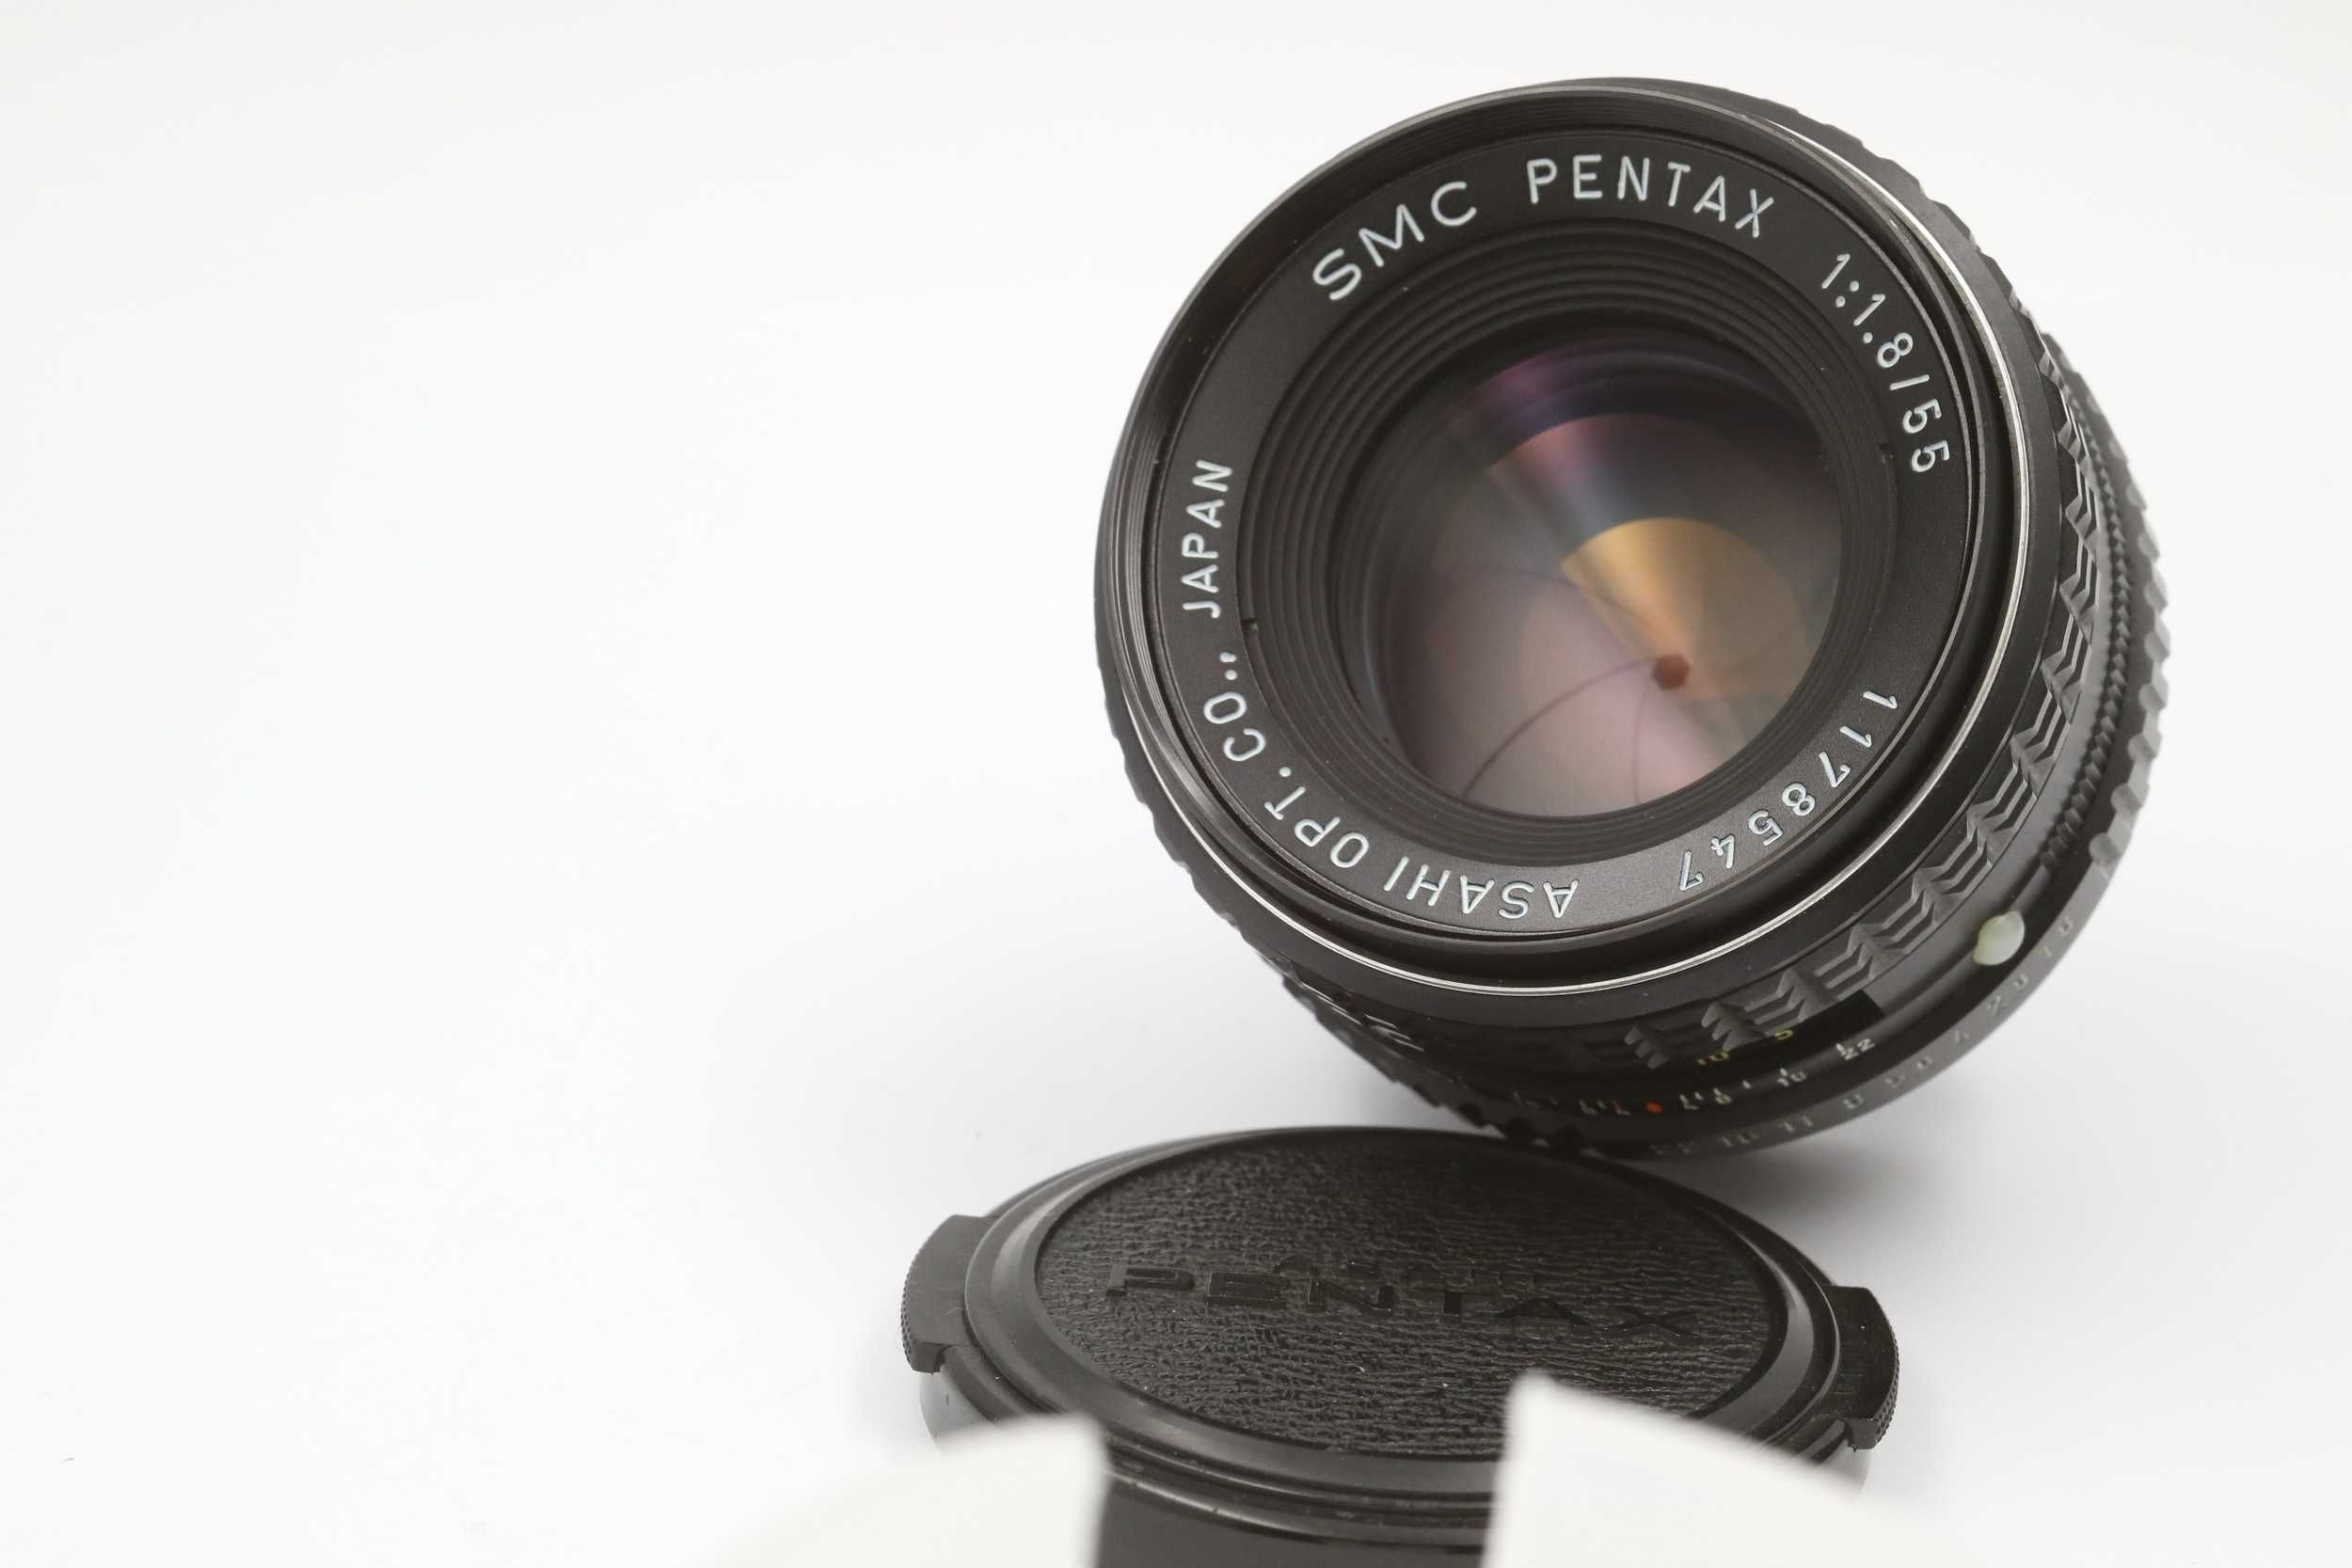 SMC Pentax 55mm f1.8